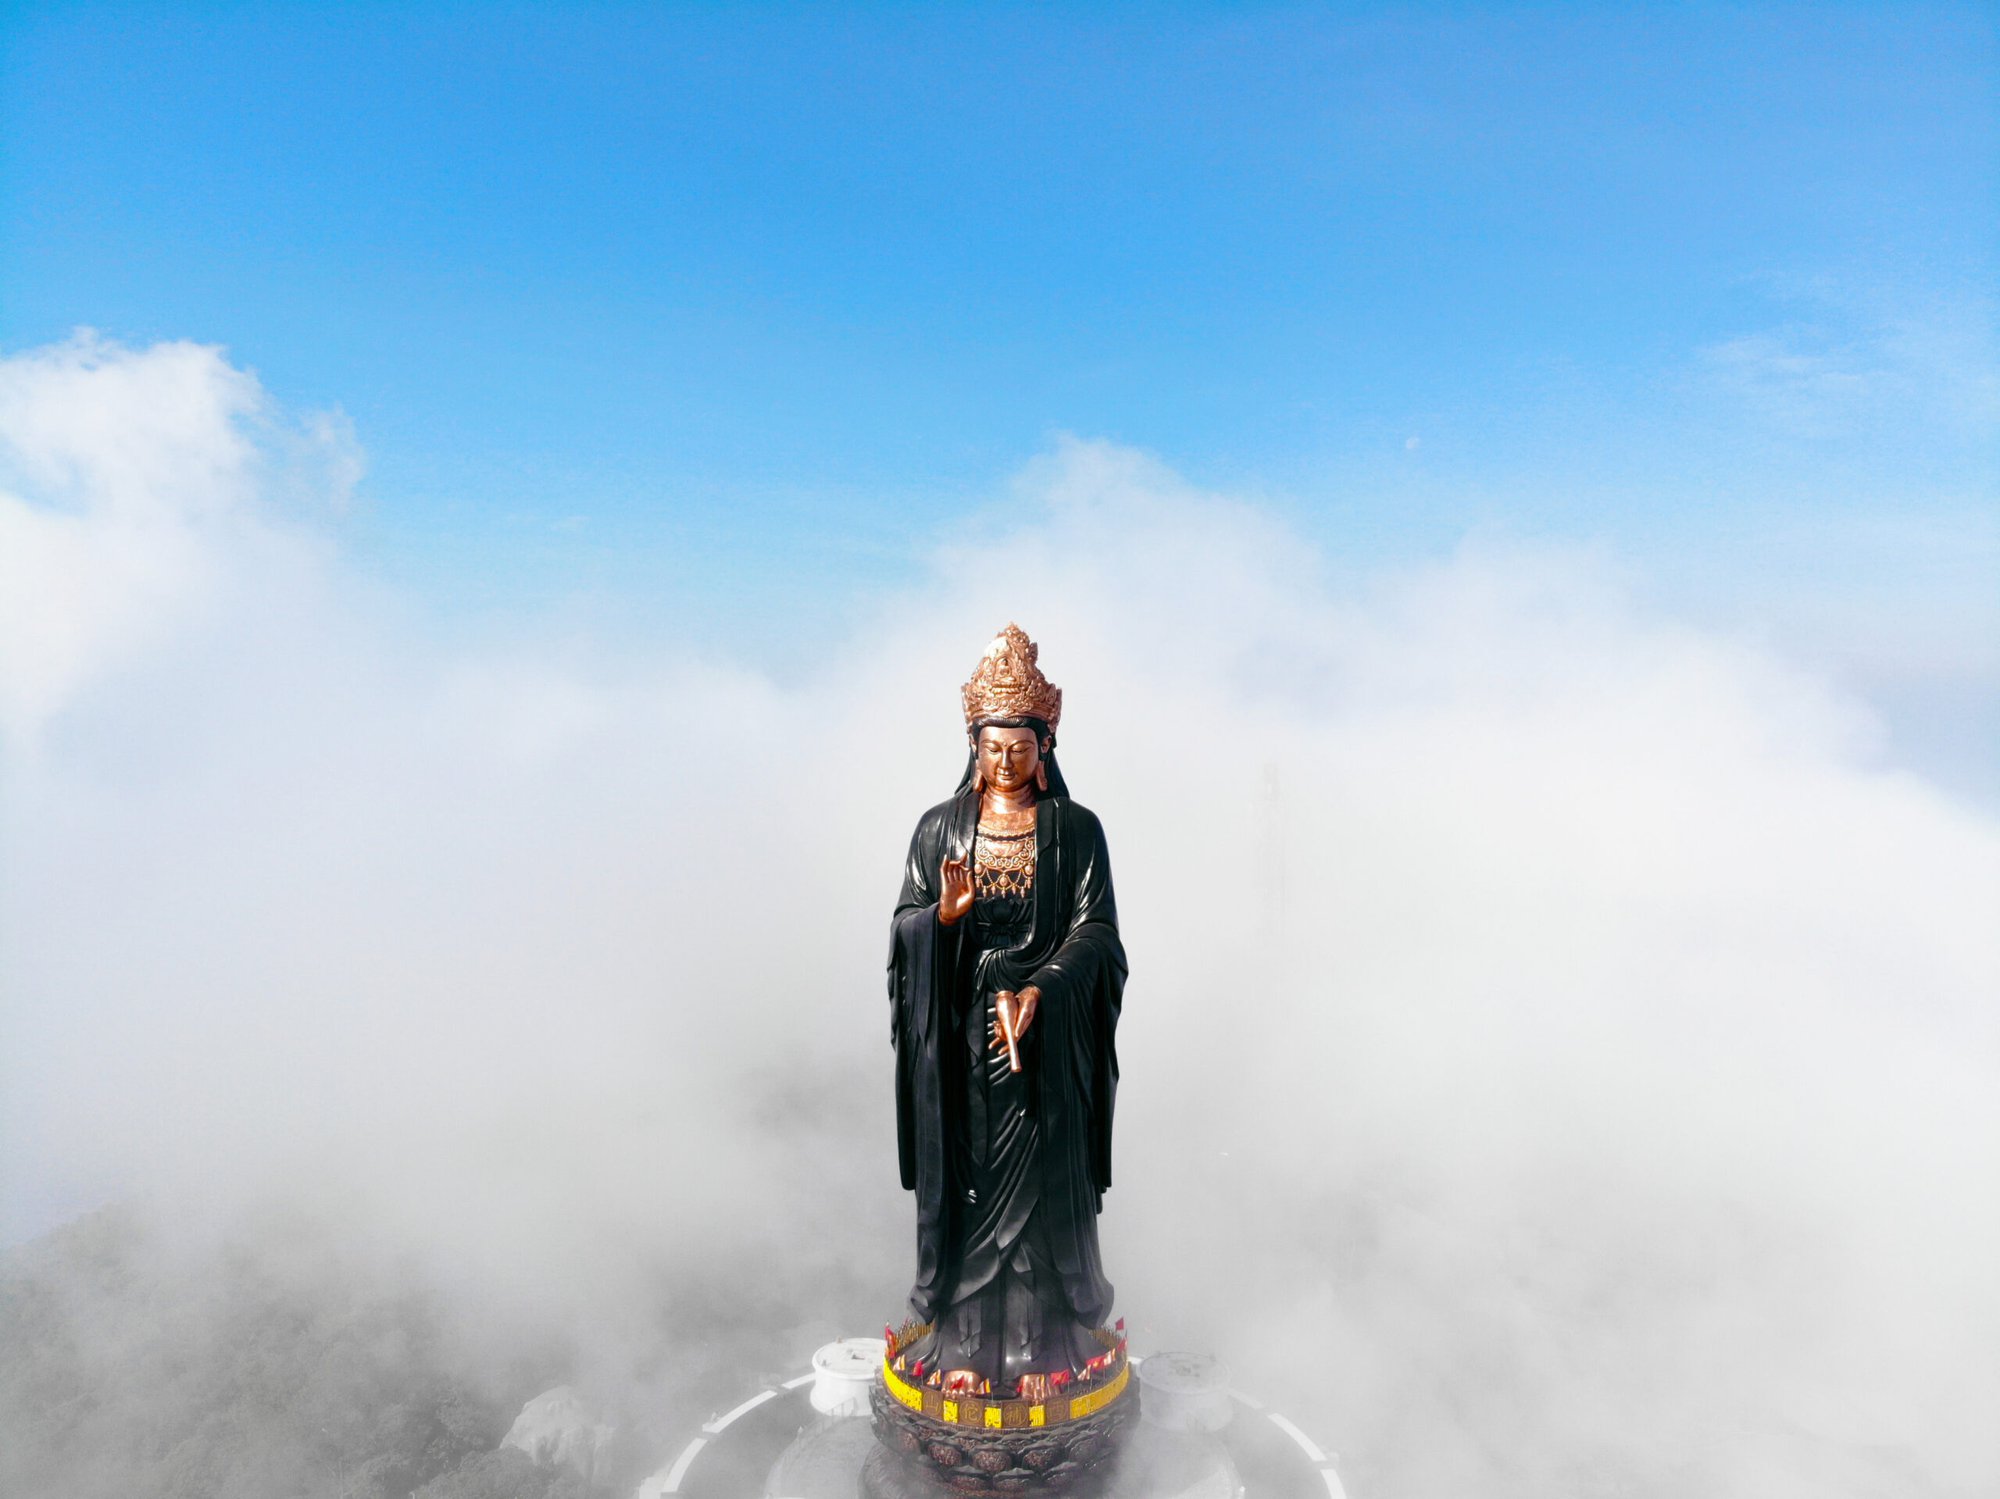 Vì sao núi Bà Đen, nơi có tượng Phật Bà bằng đồng cao nhất Việt Nam, được mệnh danh là “Đệ nhất Thiên Sơn”? - Ảnh 2.